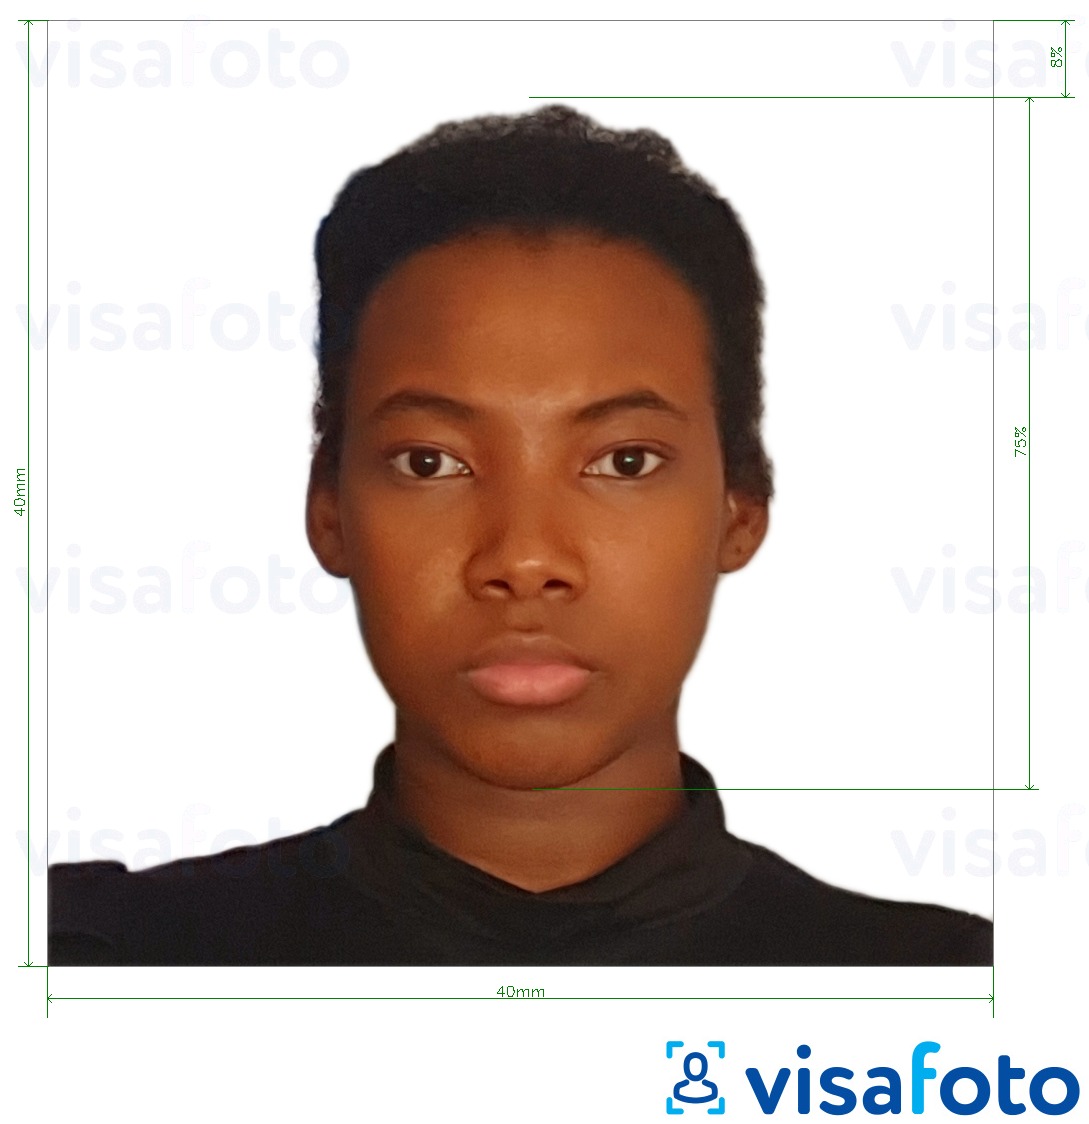 Exemple de foto per a Passaport Camerun 4x4 cm (40x40 mm) amb la mida exacta especificada